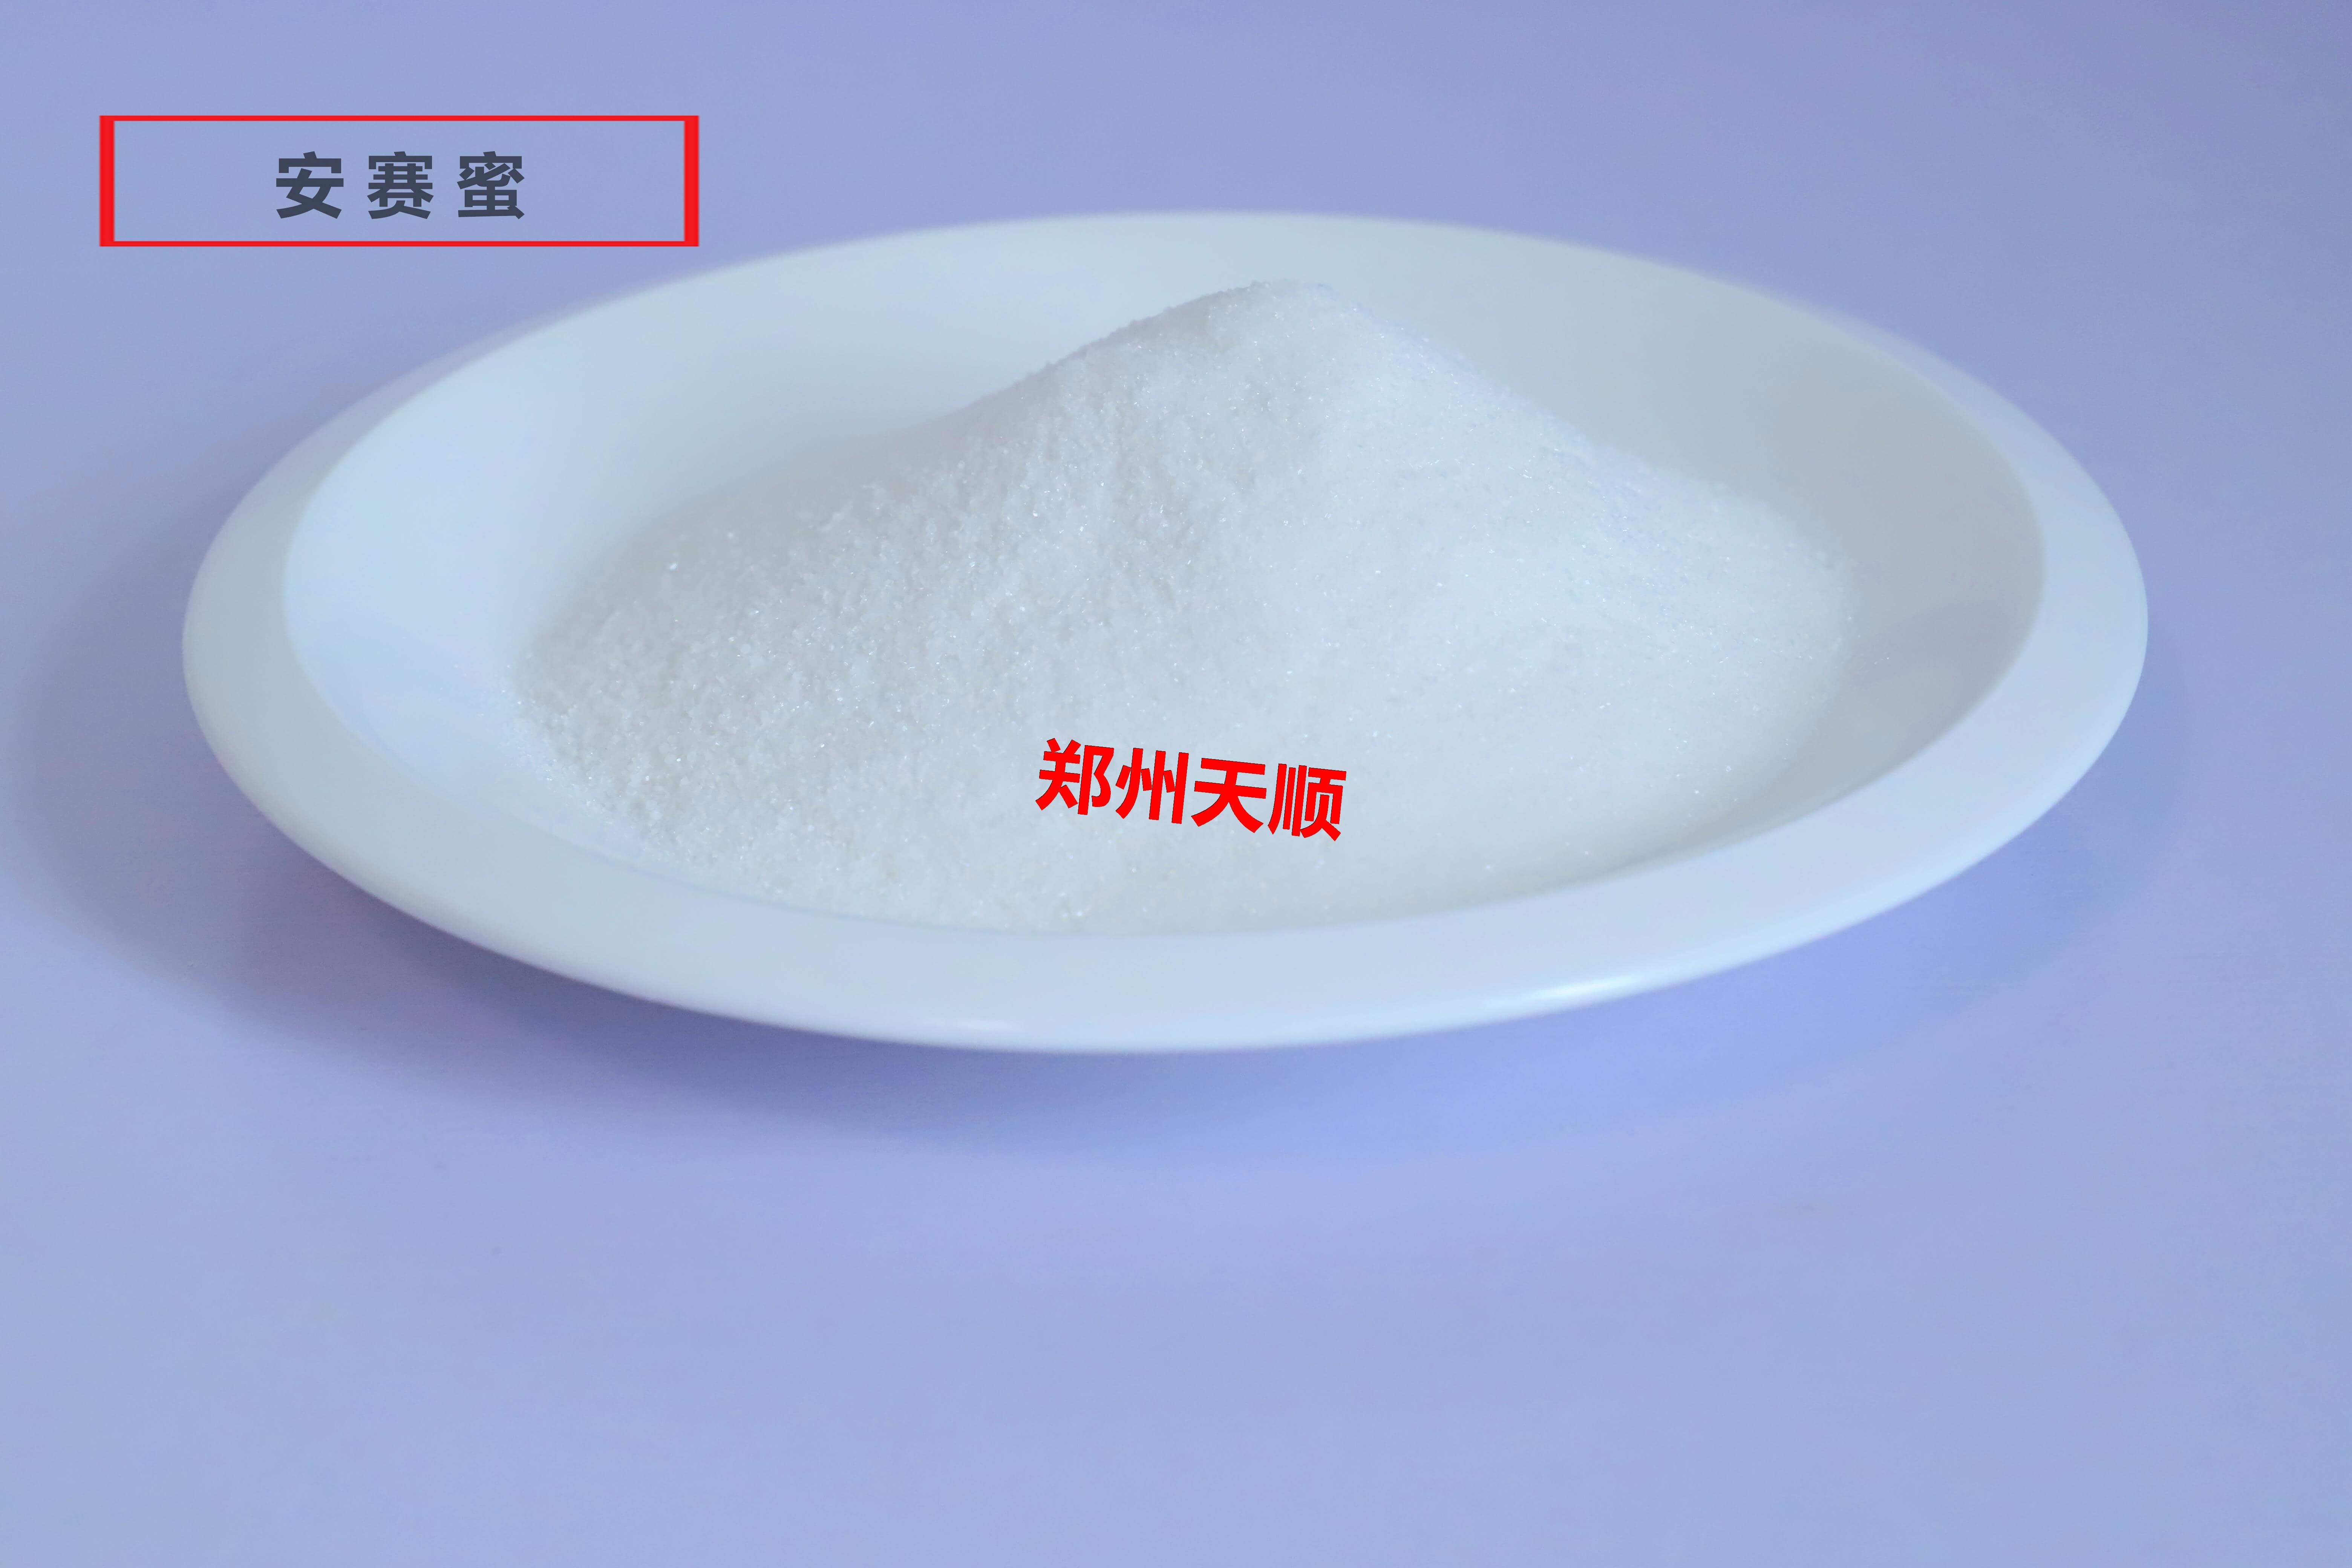 食品添加剂乙酰磺胺酸钾（又名安赛蜜）的使用范围及使用标准